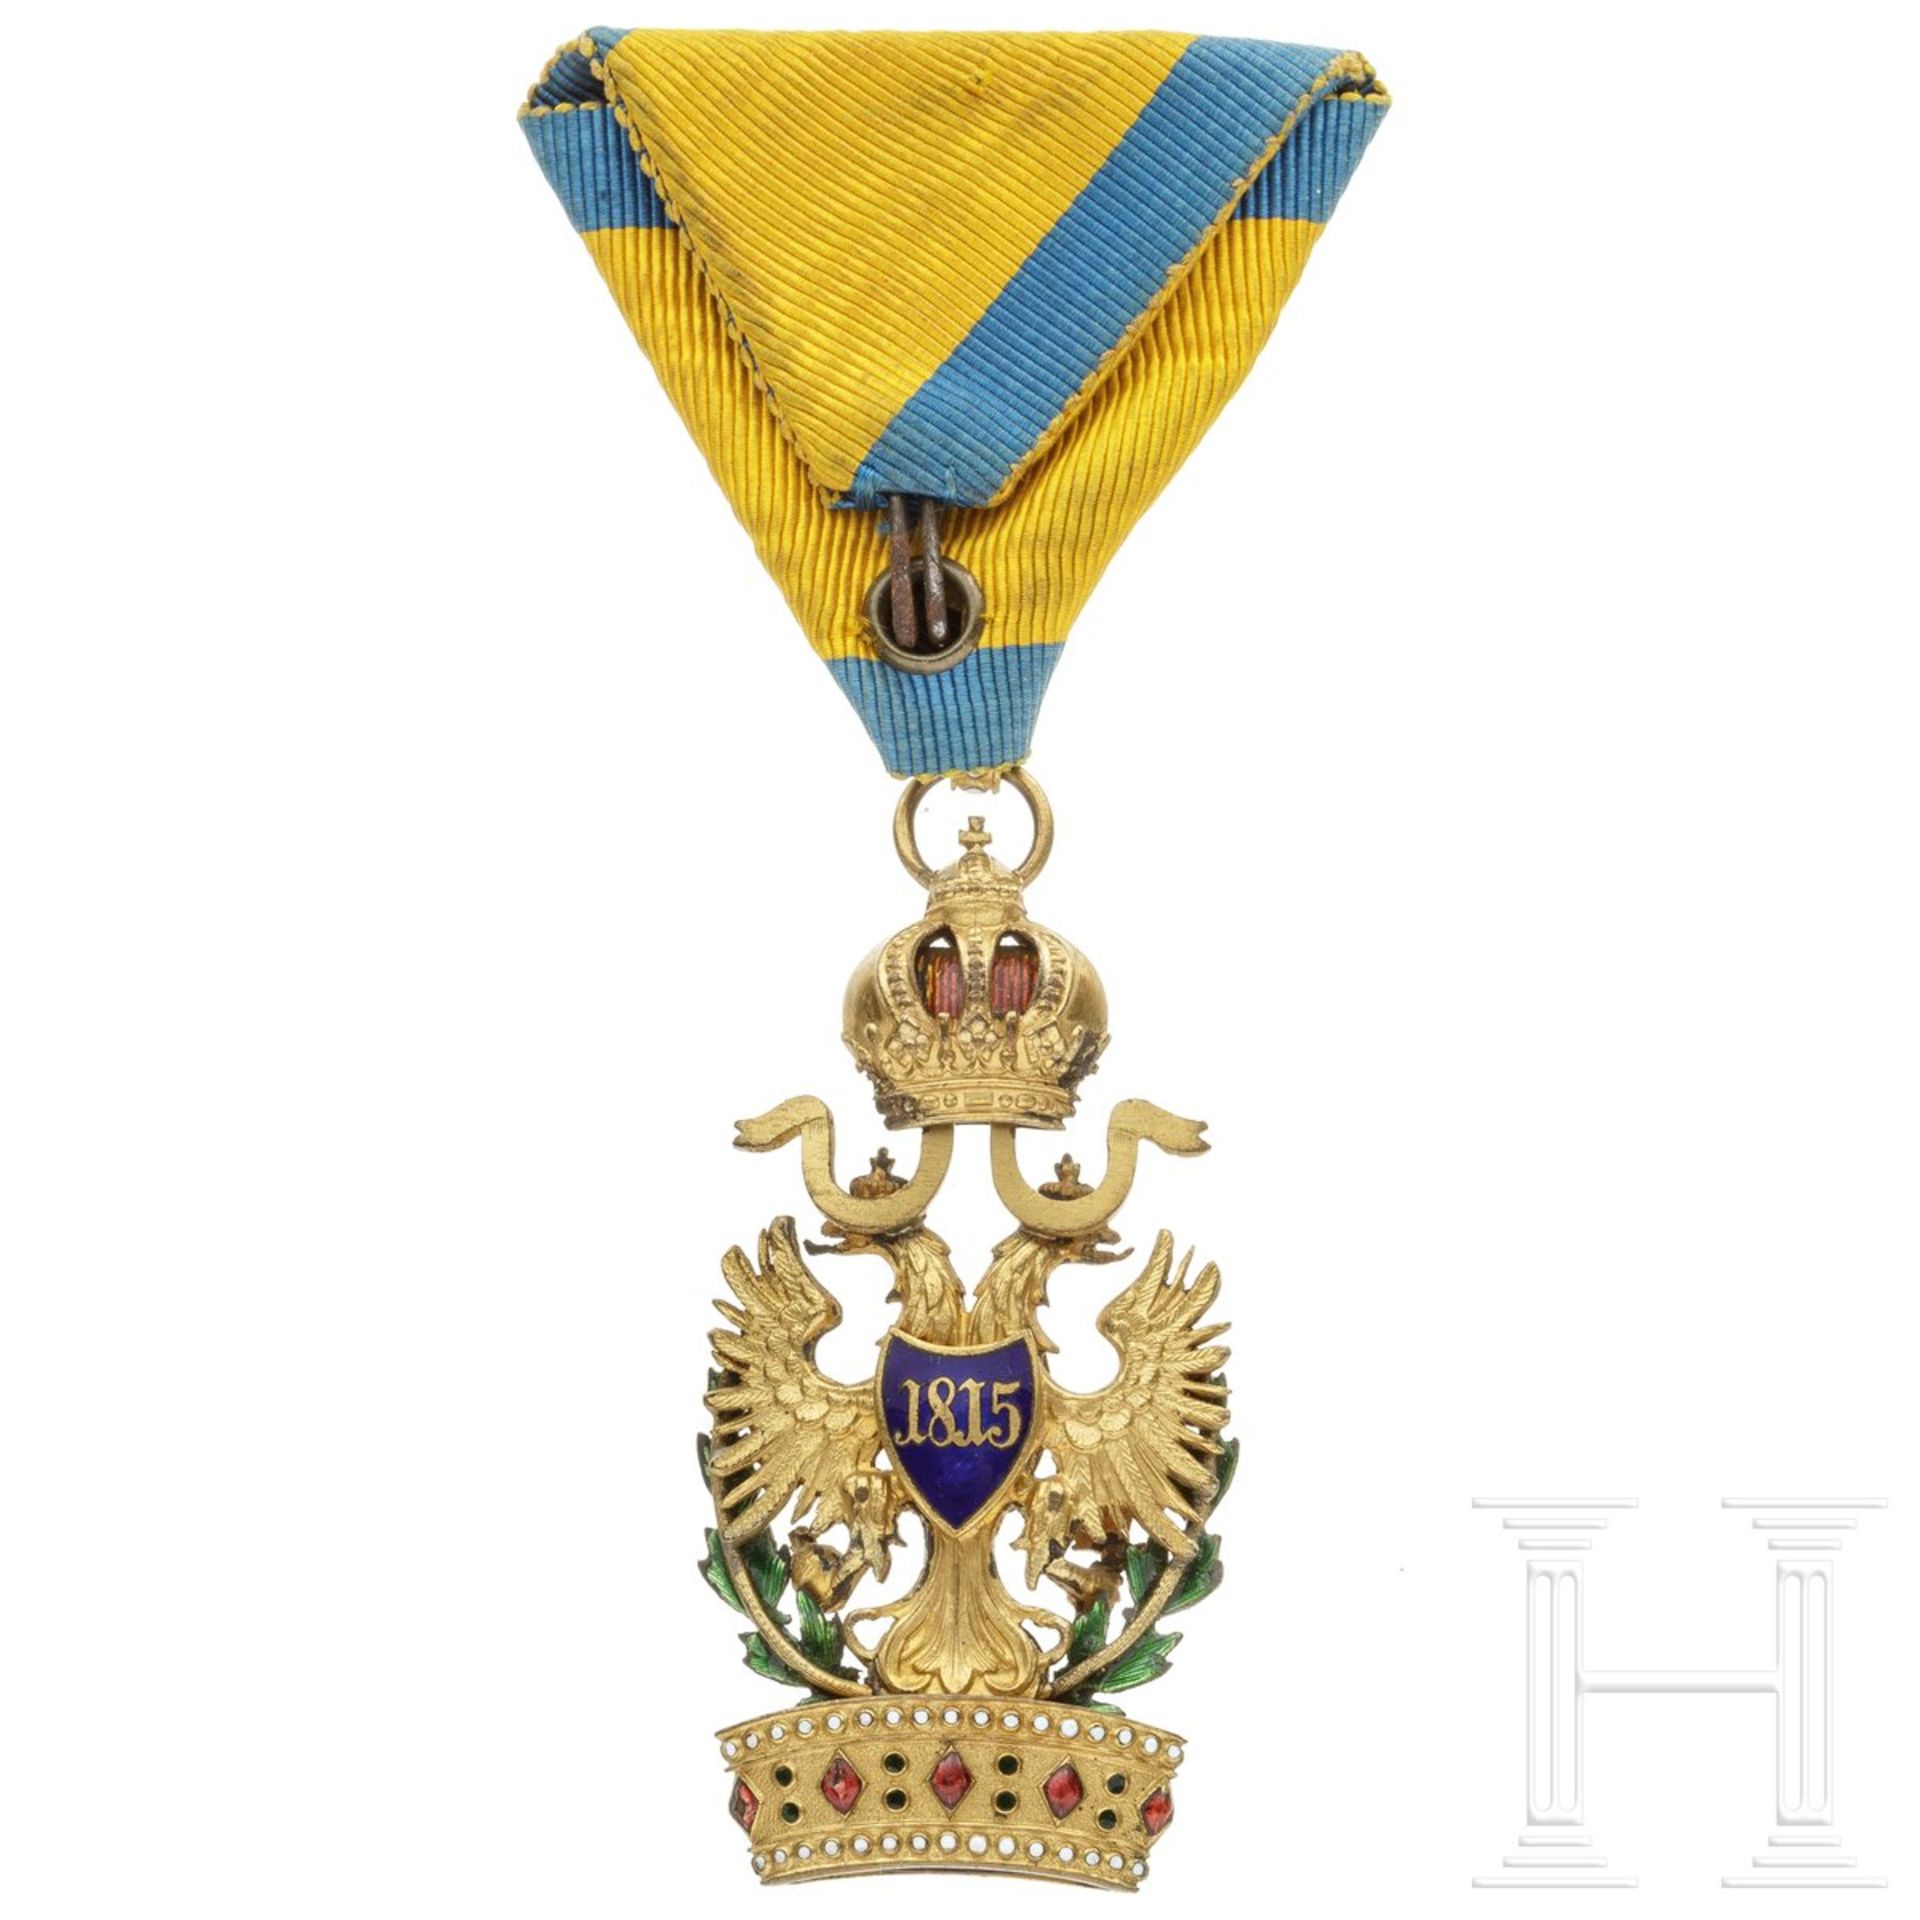 Kaiserlich österreichischer Orden der Eisernen Krone, 3. Klasse (Ritterkreuz), mit Kriegsdekorat - Image 2 of 2